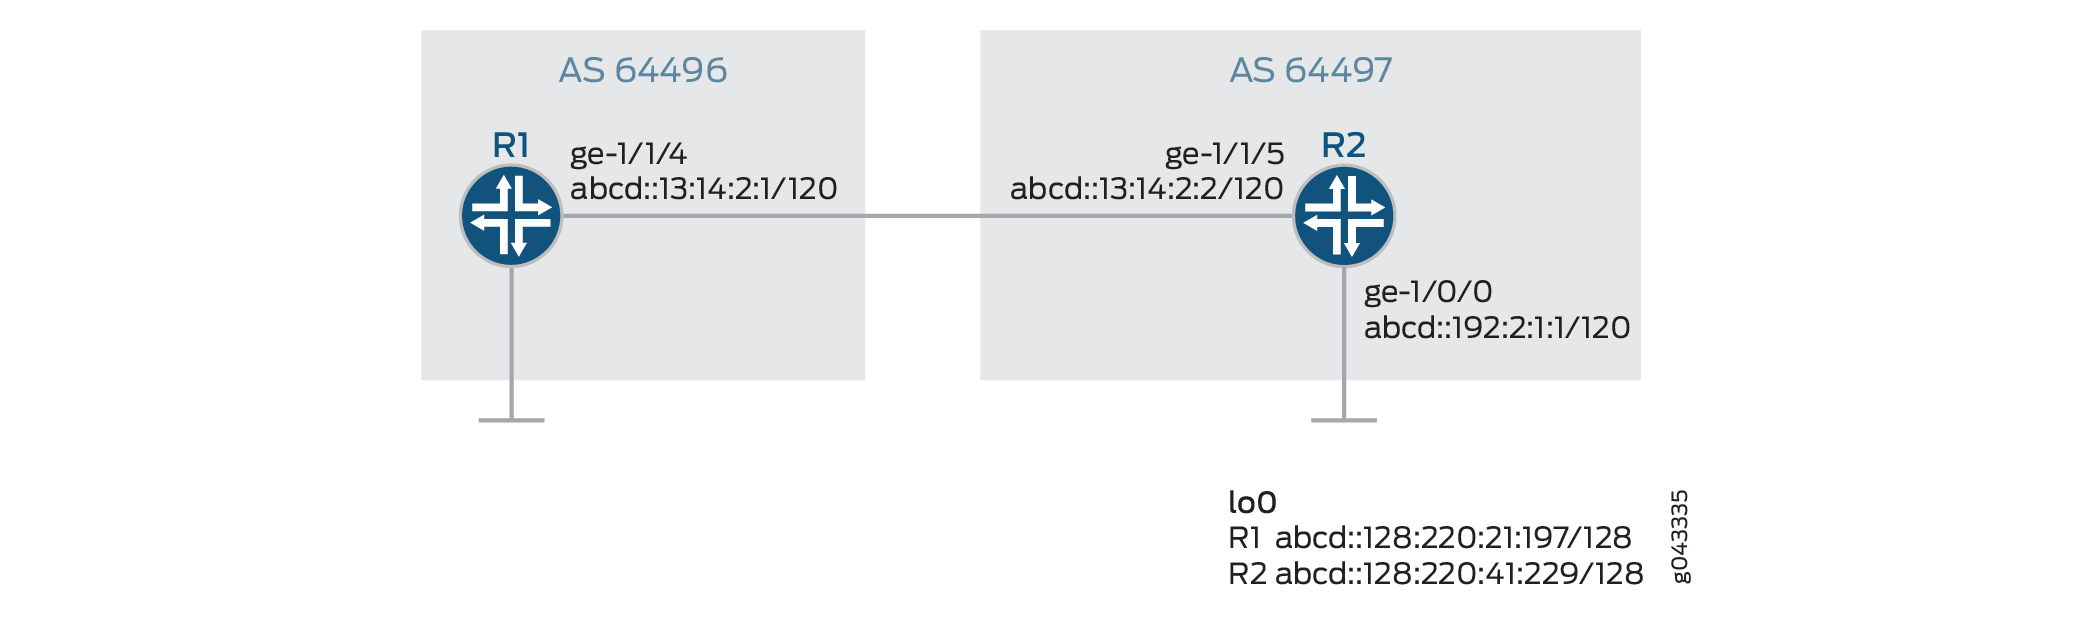 IPv6フロールートを伝送するBGPの設定